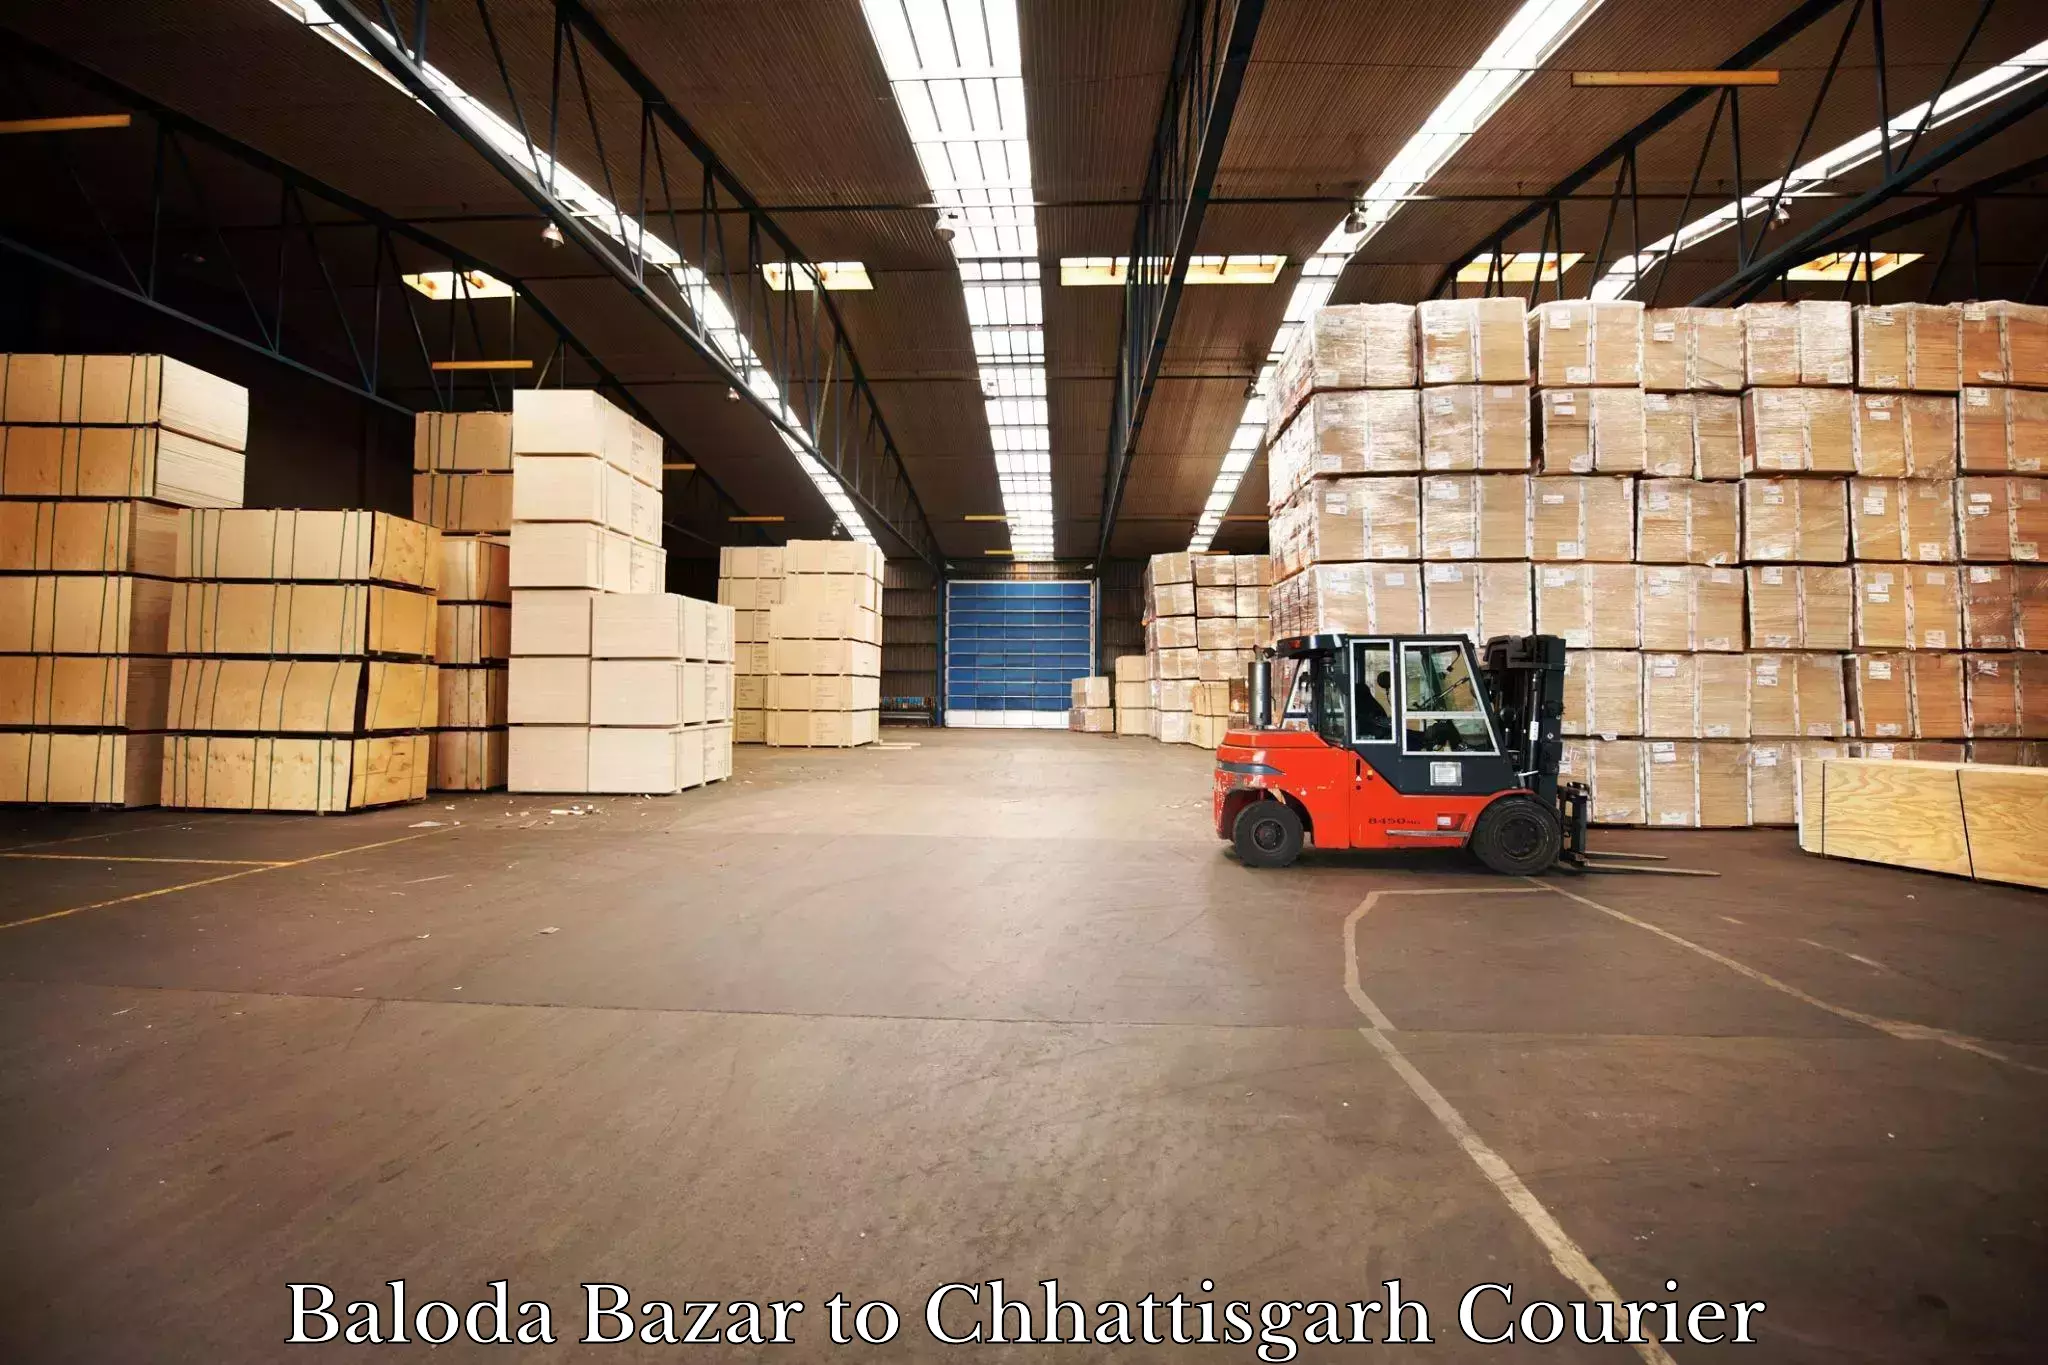 Courier service innovation Baloda Bazar to Pithora